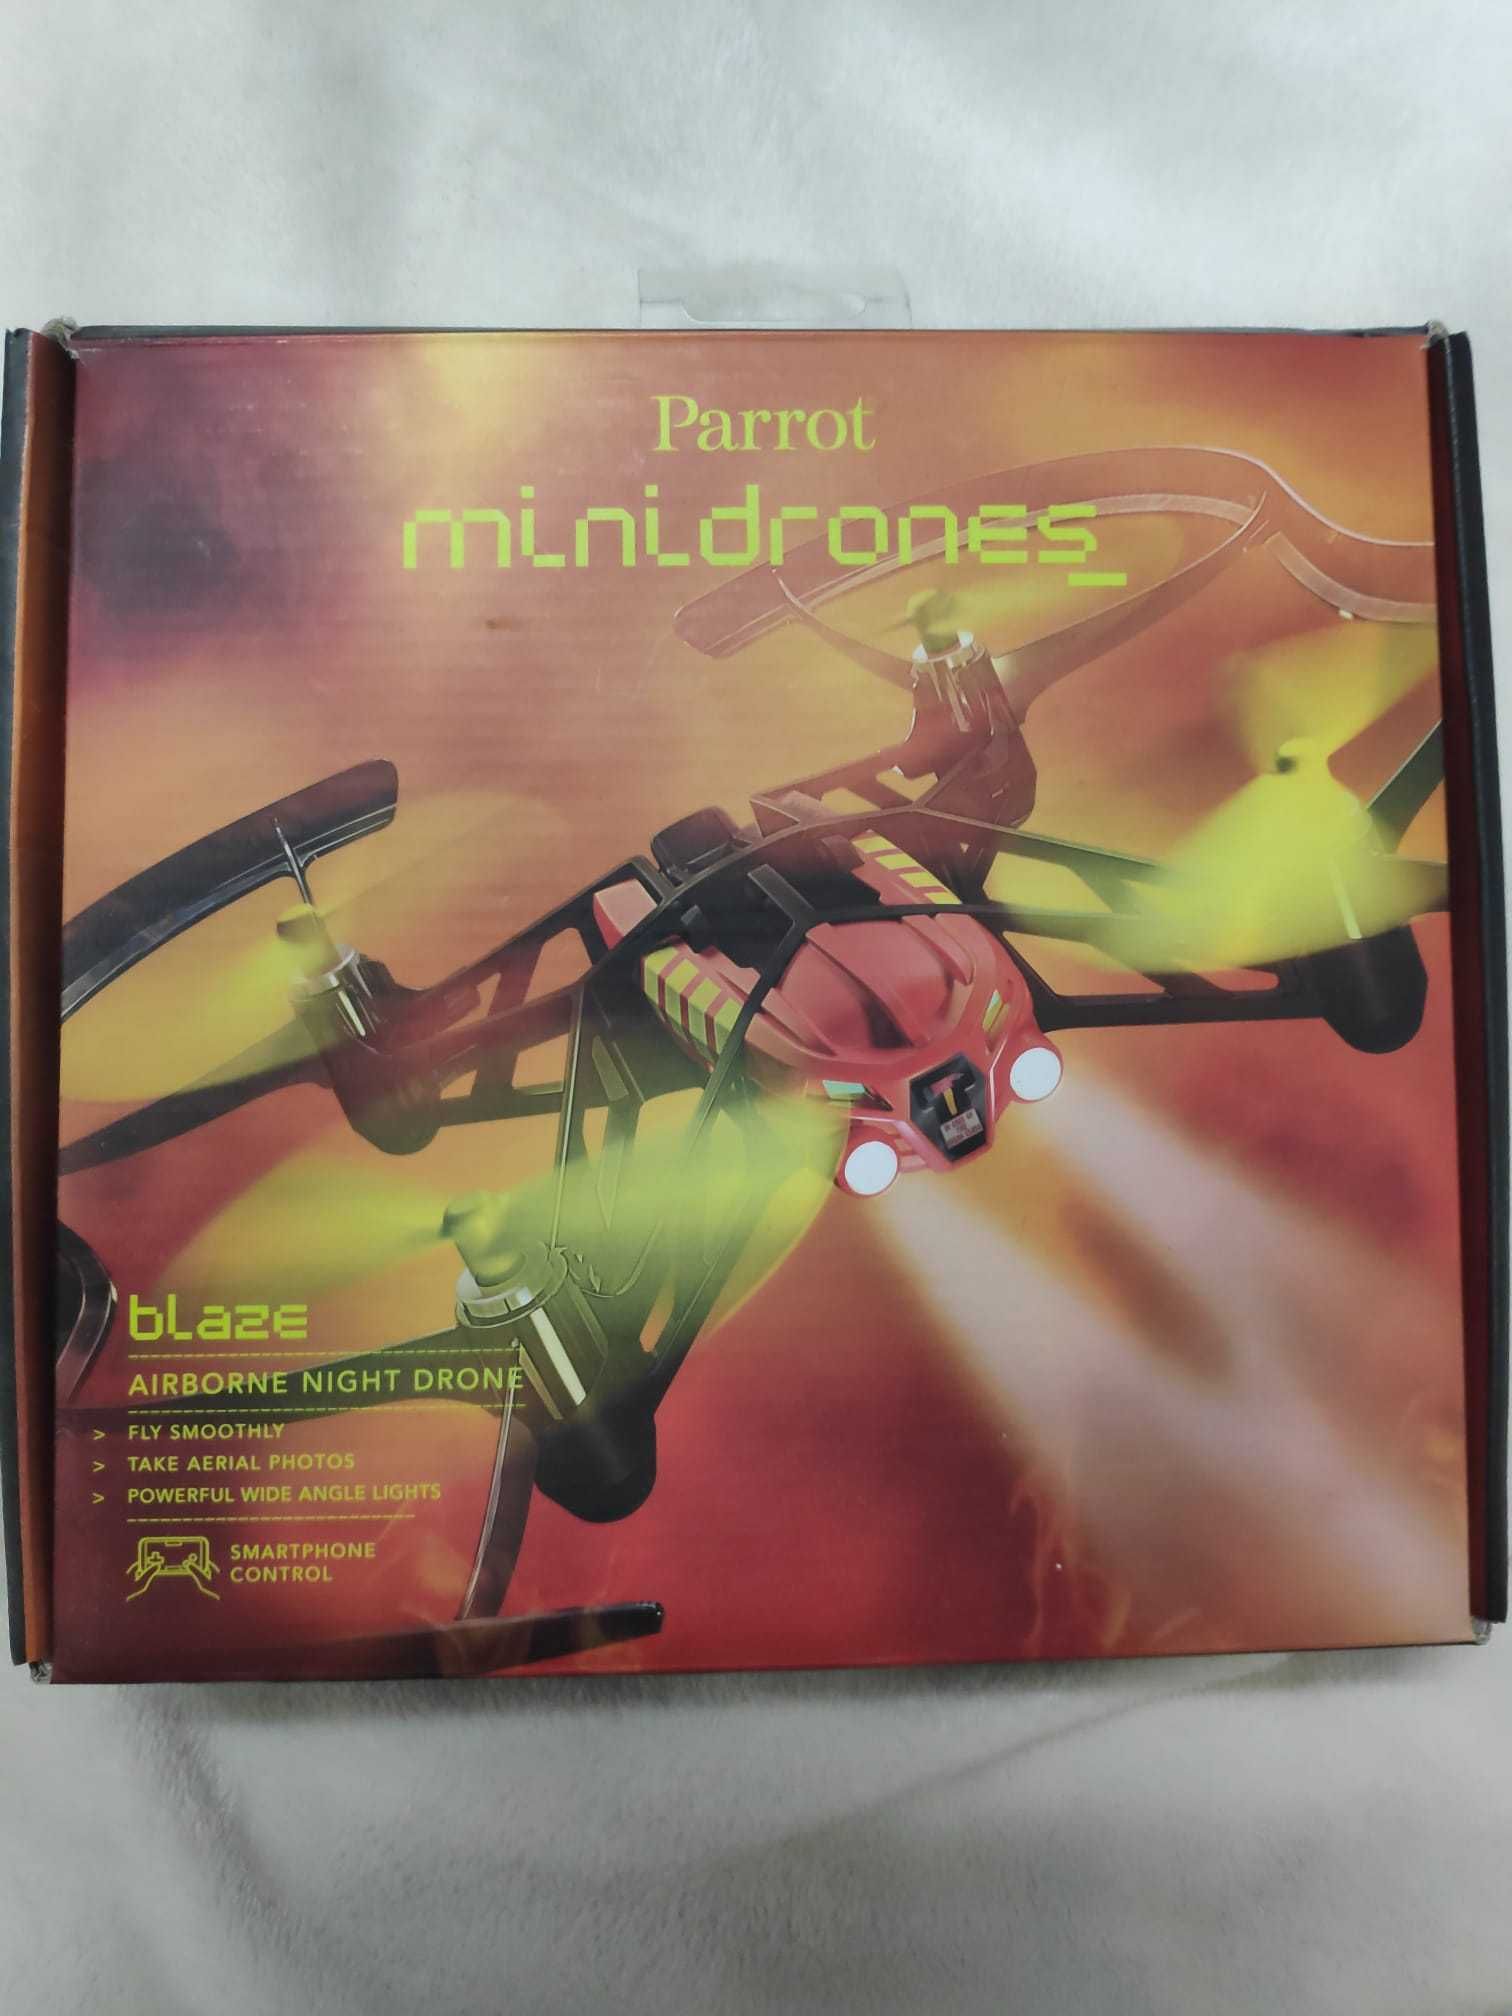 Parrot - Mini Drone - 50 euros